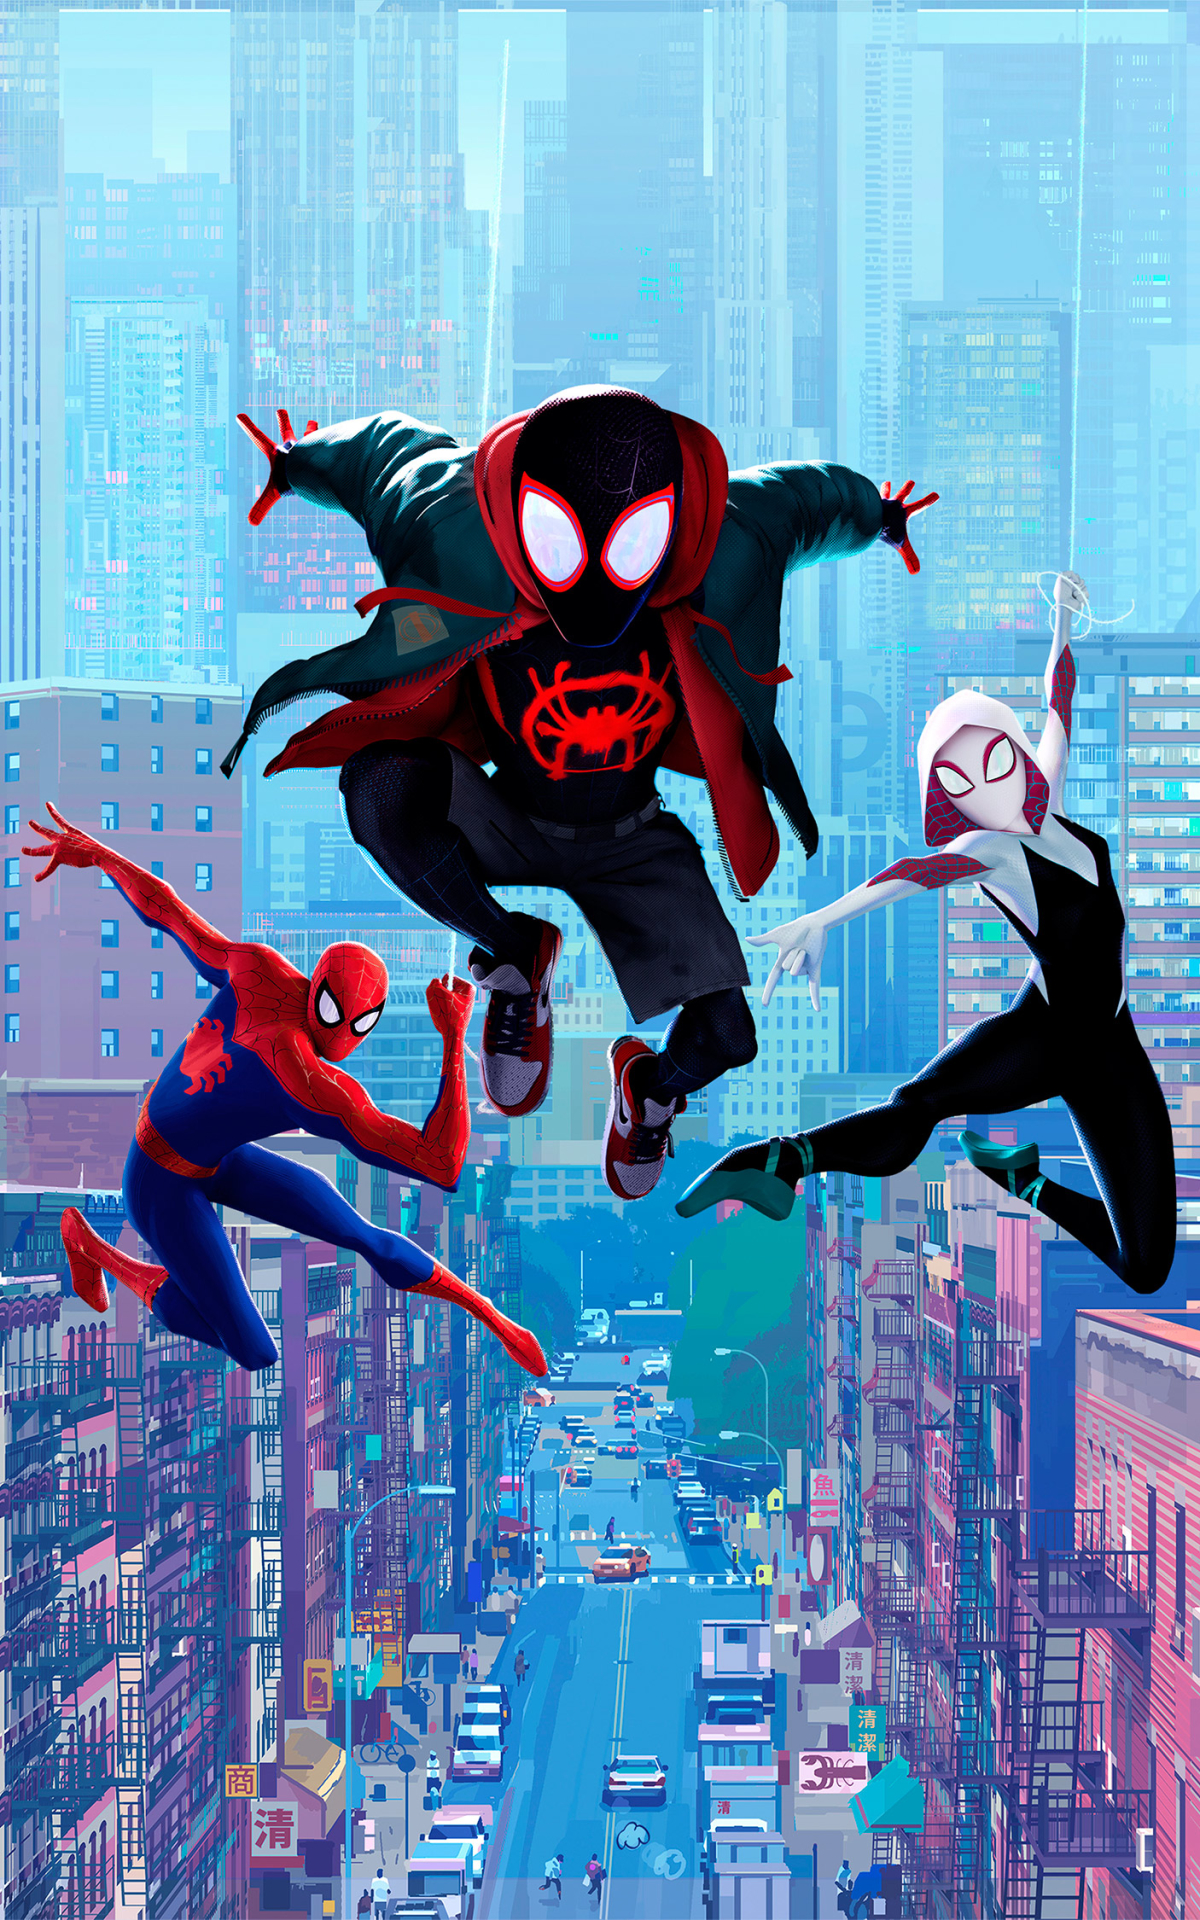 Descarga gratuita de fondo de pantalla para móvil de Películas, Hombre Araña, Spider Man, Millas Morales, Araña Gwen, Spider Man: Un Nuevo Universo.